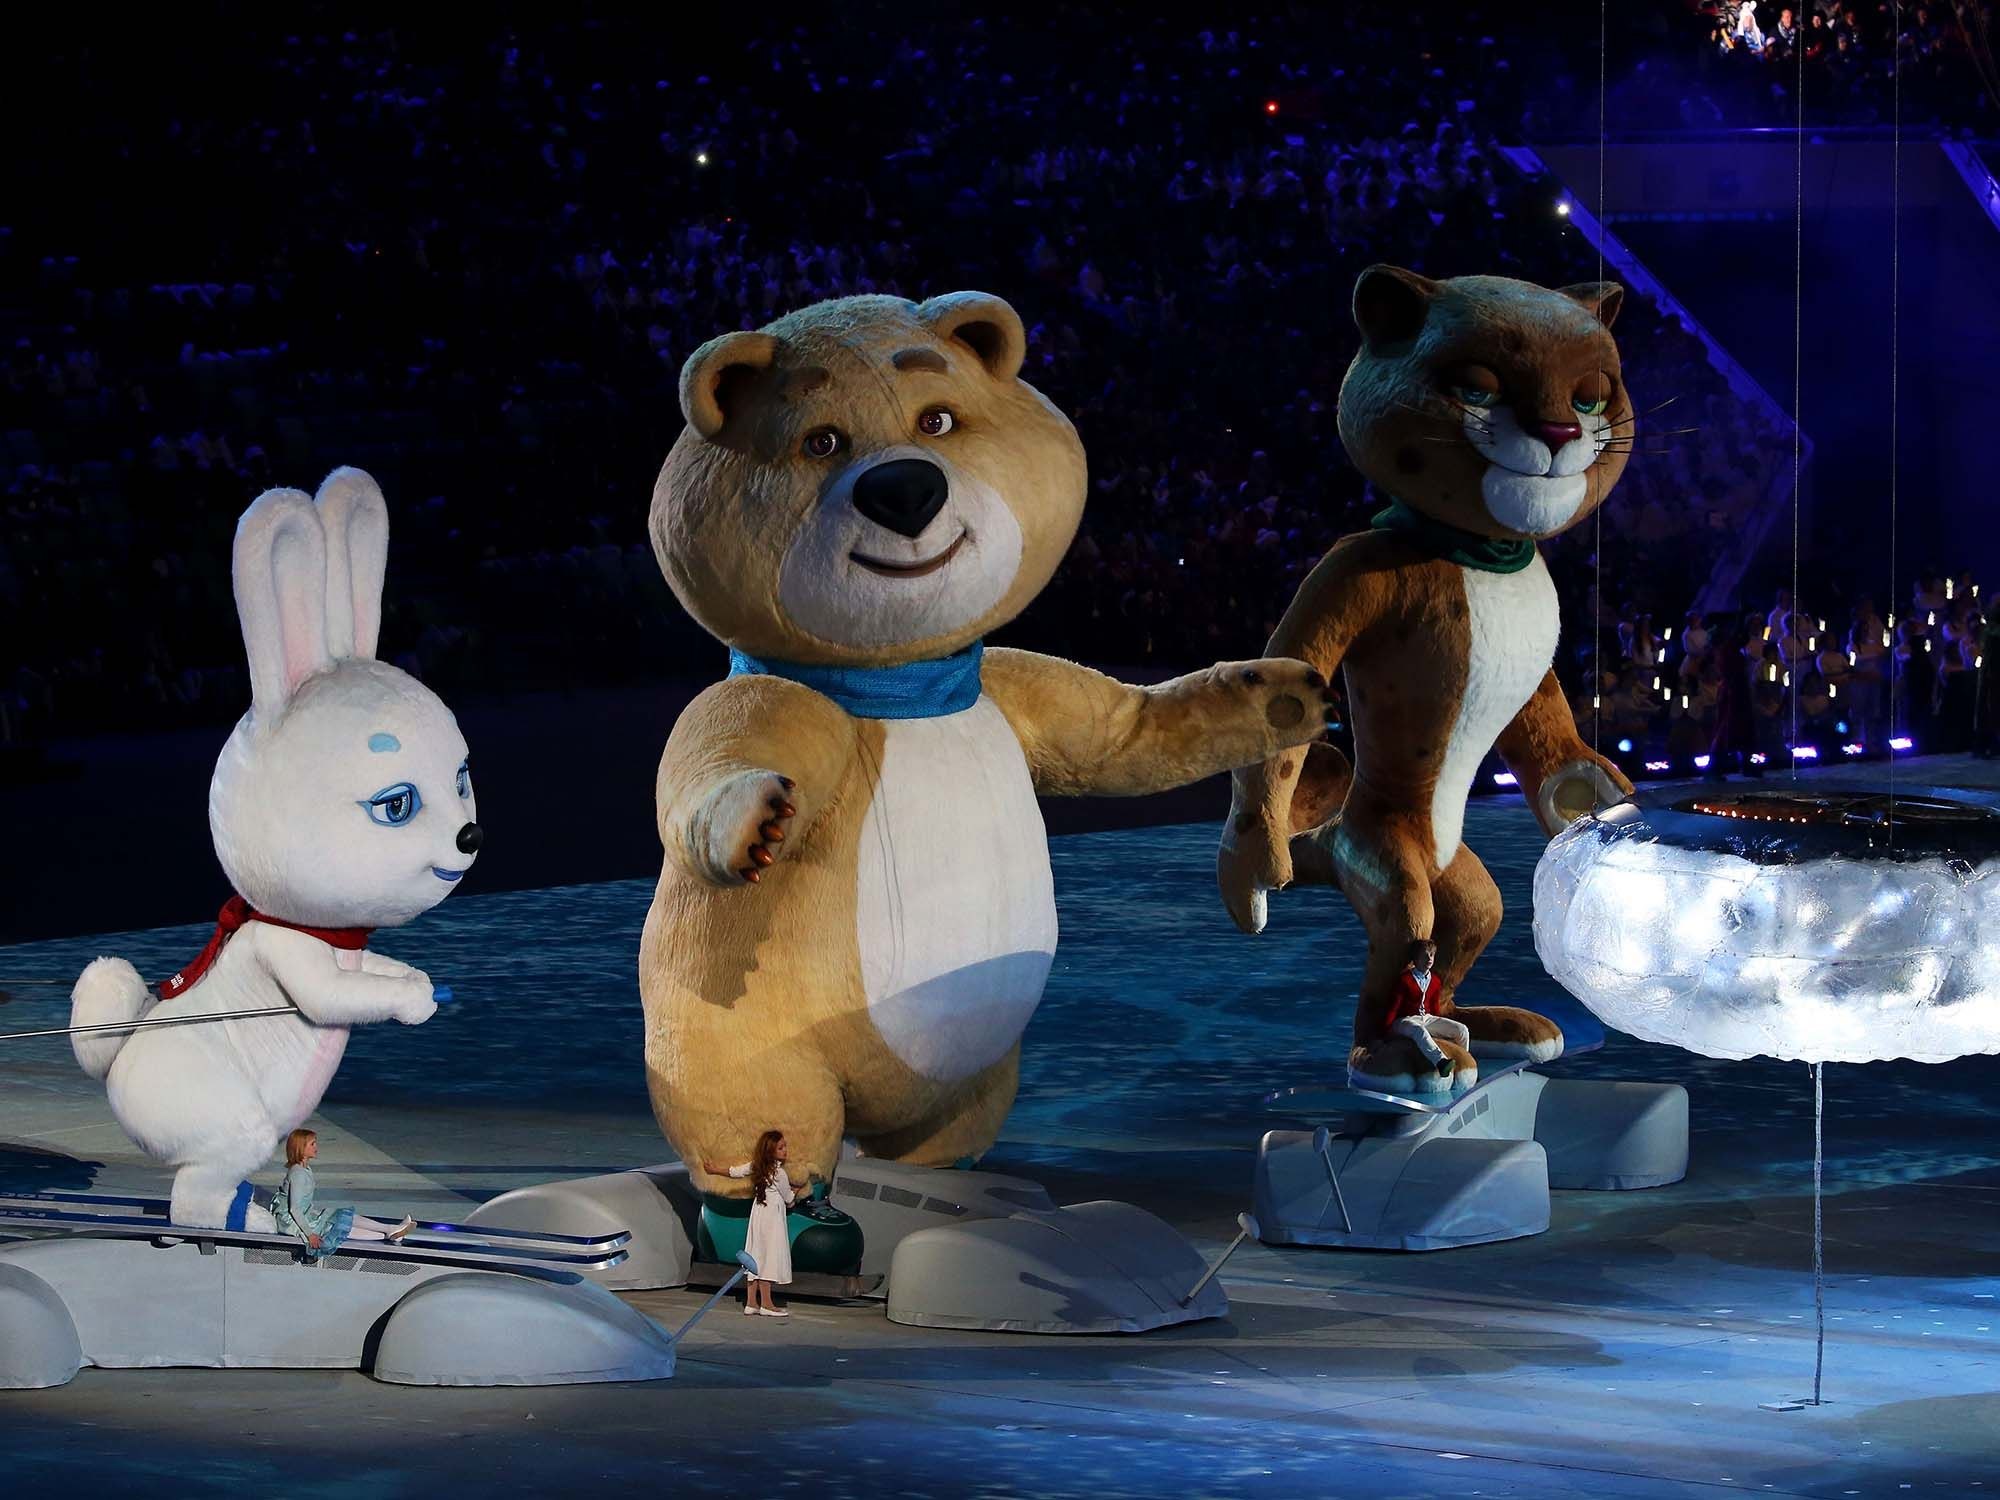 Видео ои. Талисманы Олимпийских игр в Сочи 2014. Леопард белый медведь и Зайка Сочи 2014. Талисманы Олимпийских игр 2014 в Сочи заяц белый медведь и леопард.